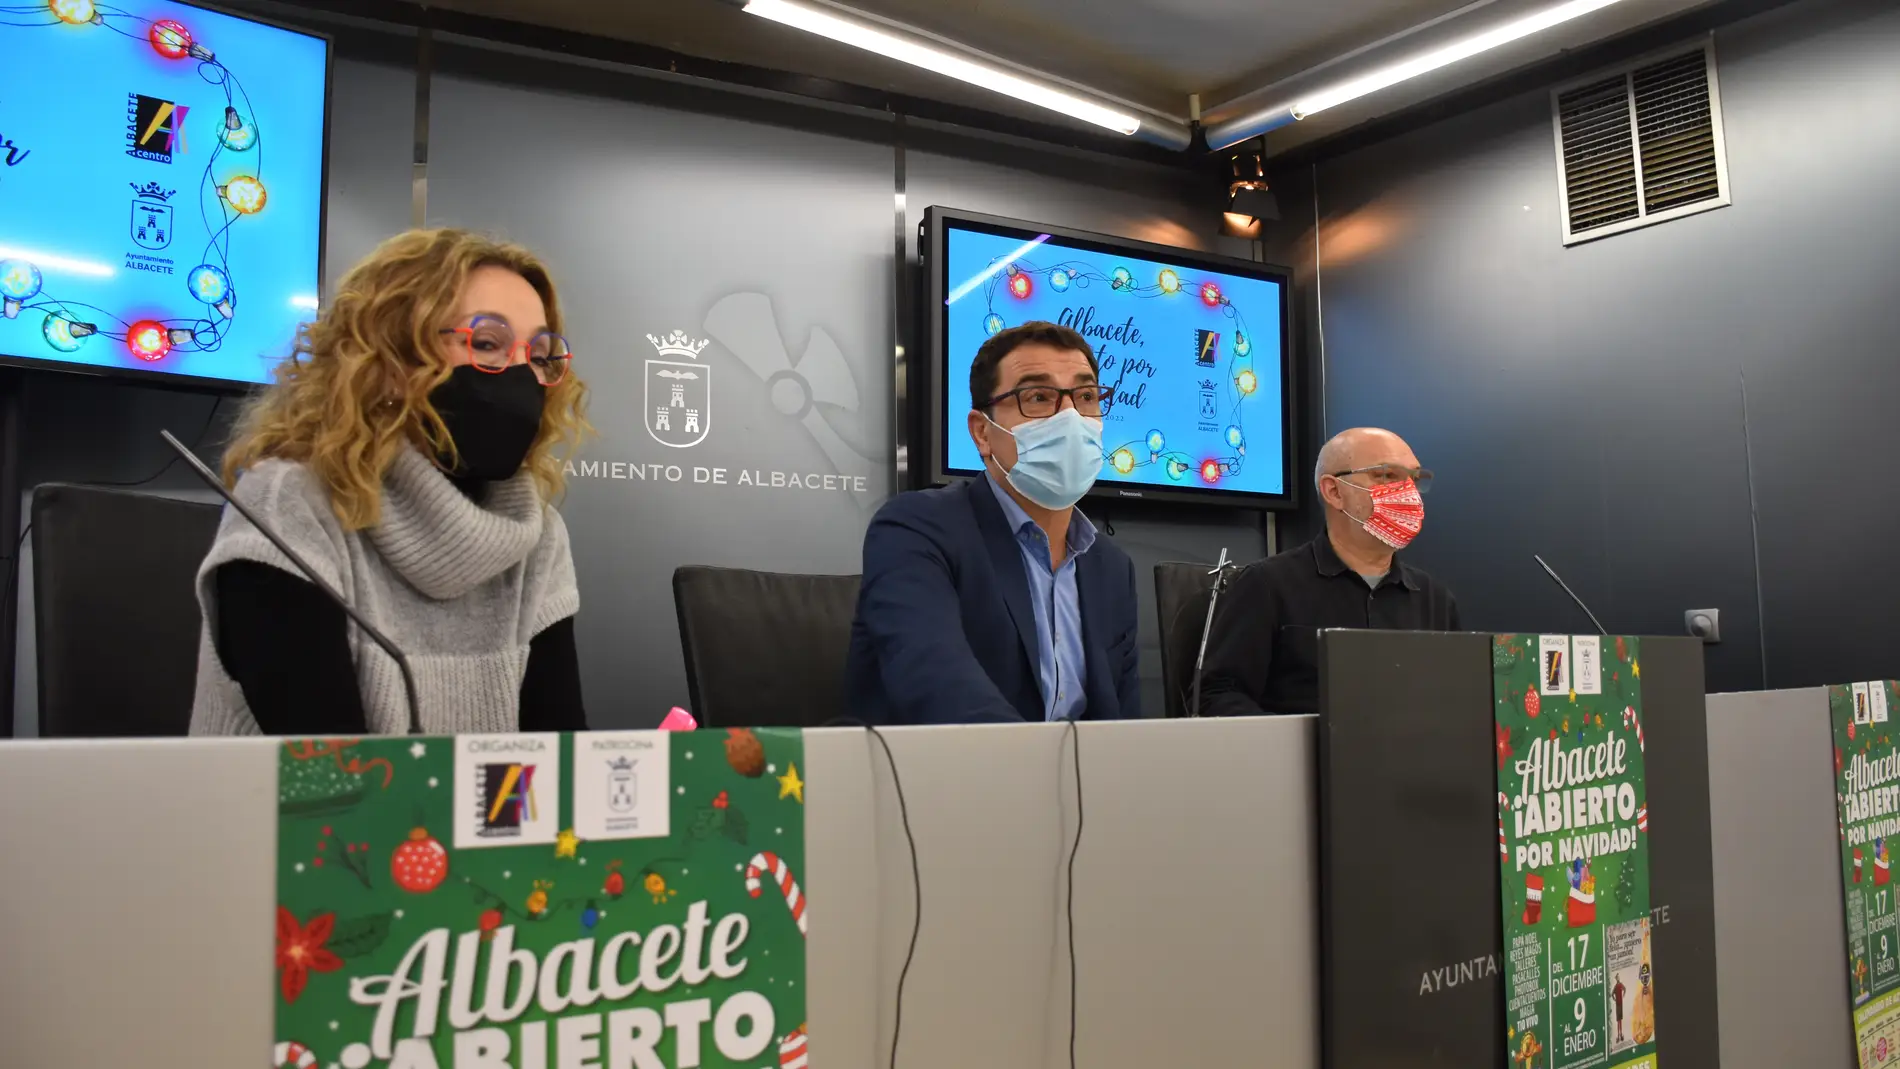 Albacete, abierto por Navidad’ , la campaña que pretende reactivar el comercio de proximidad